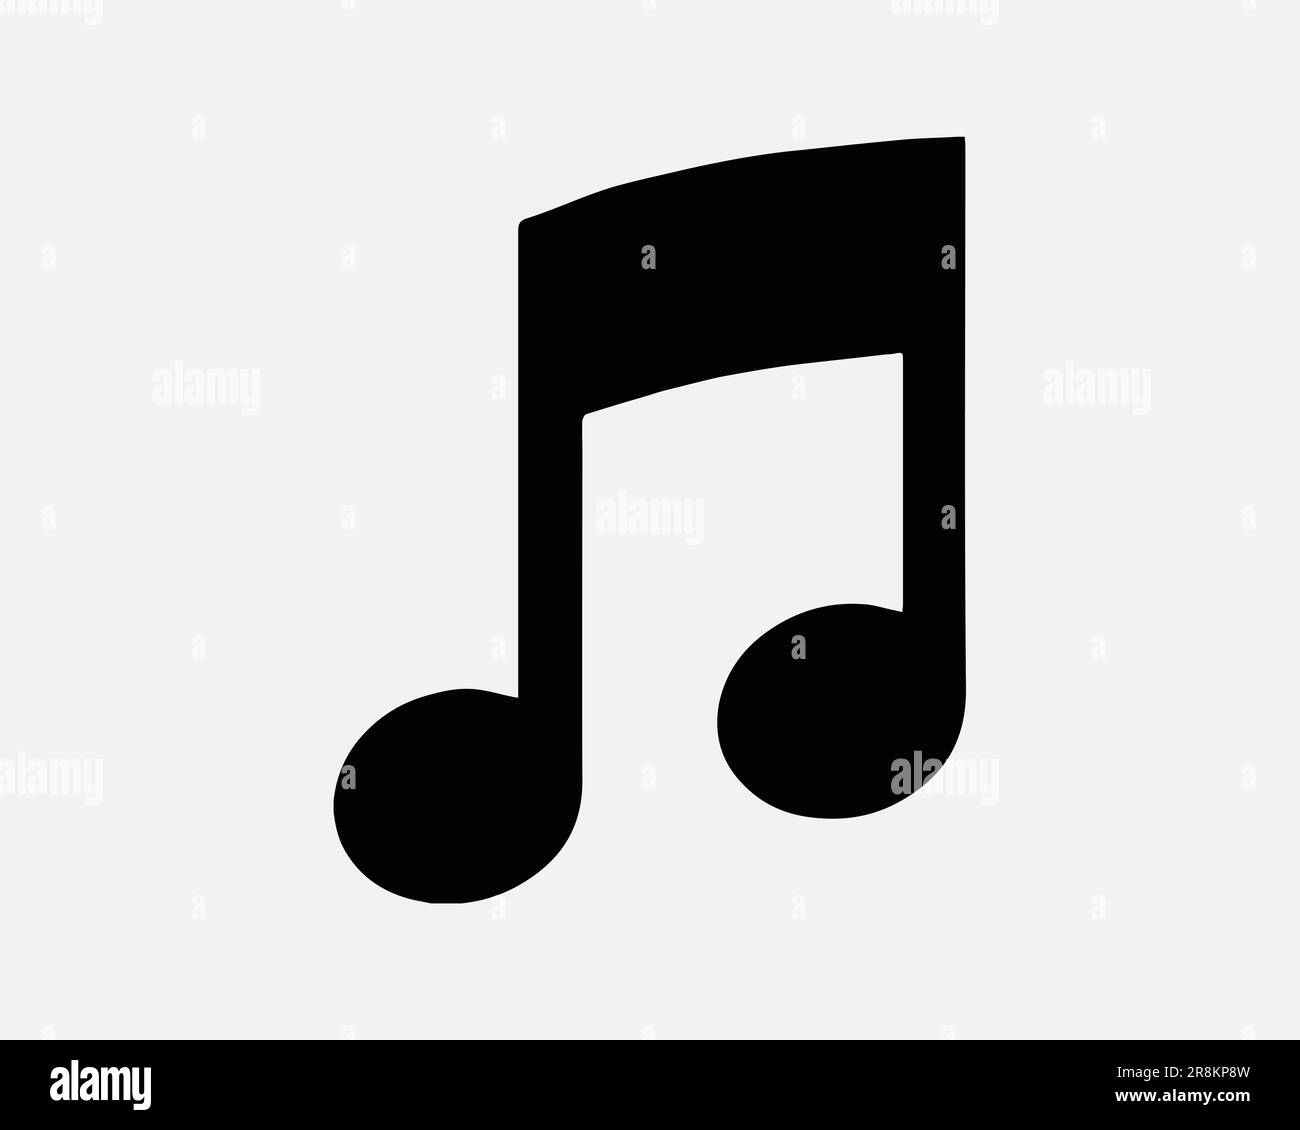 Icona Musica. Melodia Nota musicale Key Quaver Tone Song Sing Tune Audio. Nero Bianco simbolo simbolo di forma Illustrazione Illustrazione grafico Clipart vettore EPS Illustrazione Vettoriale